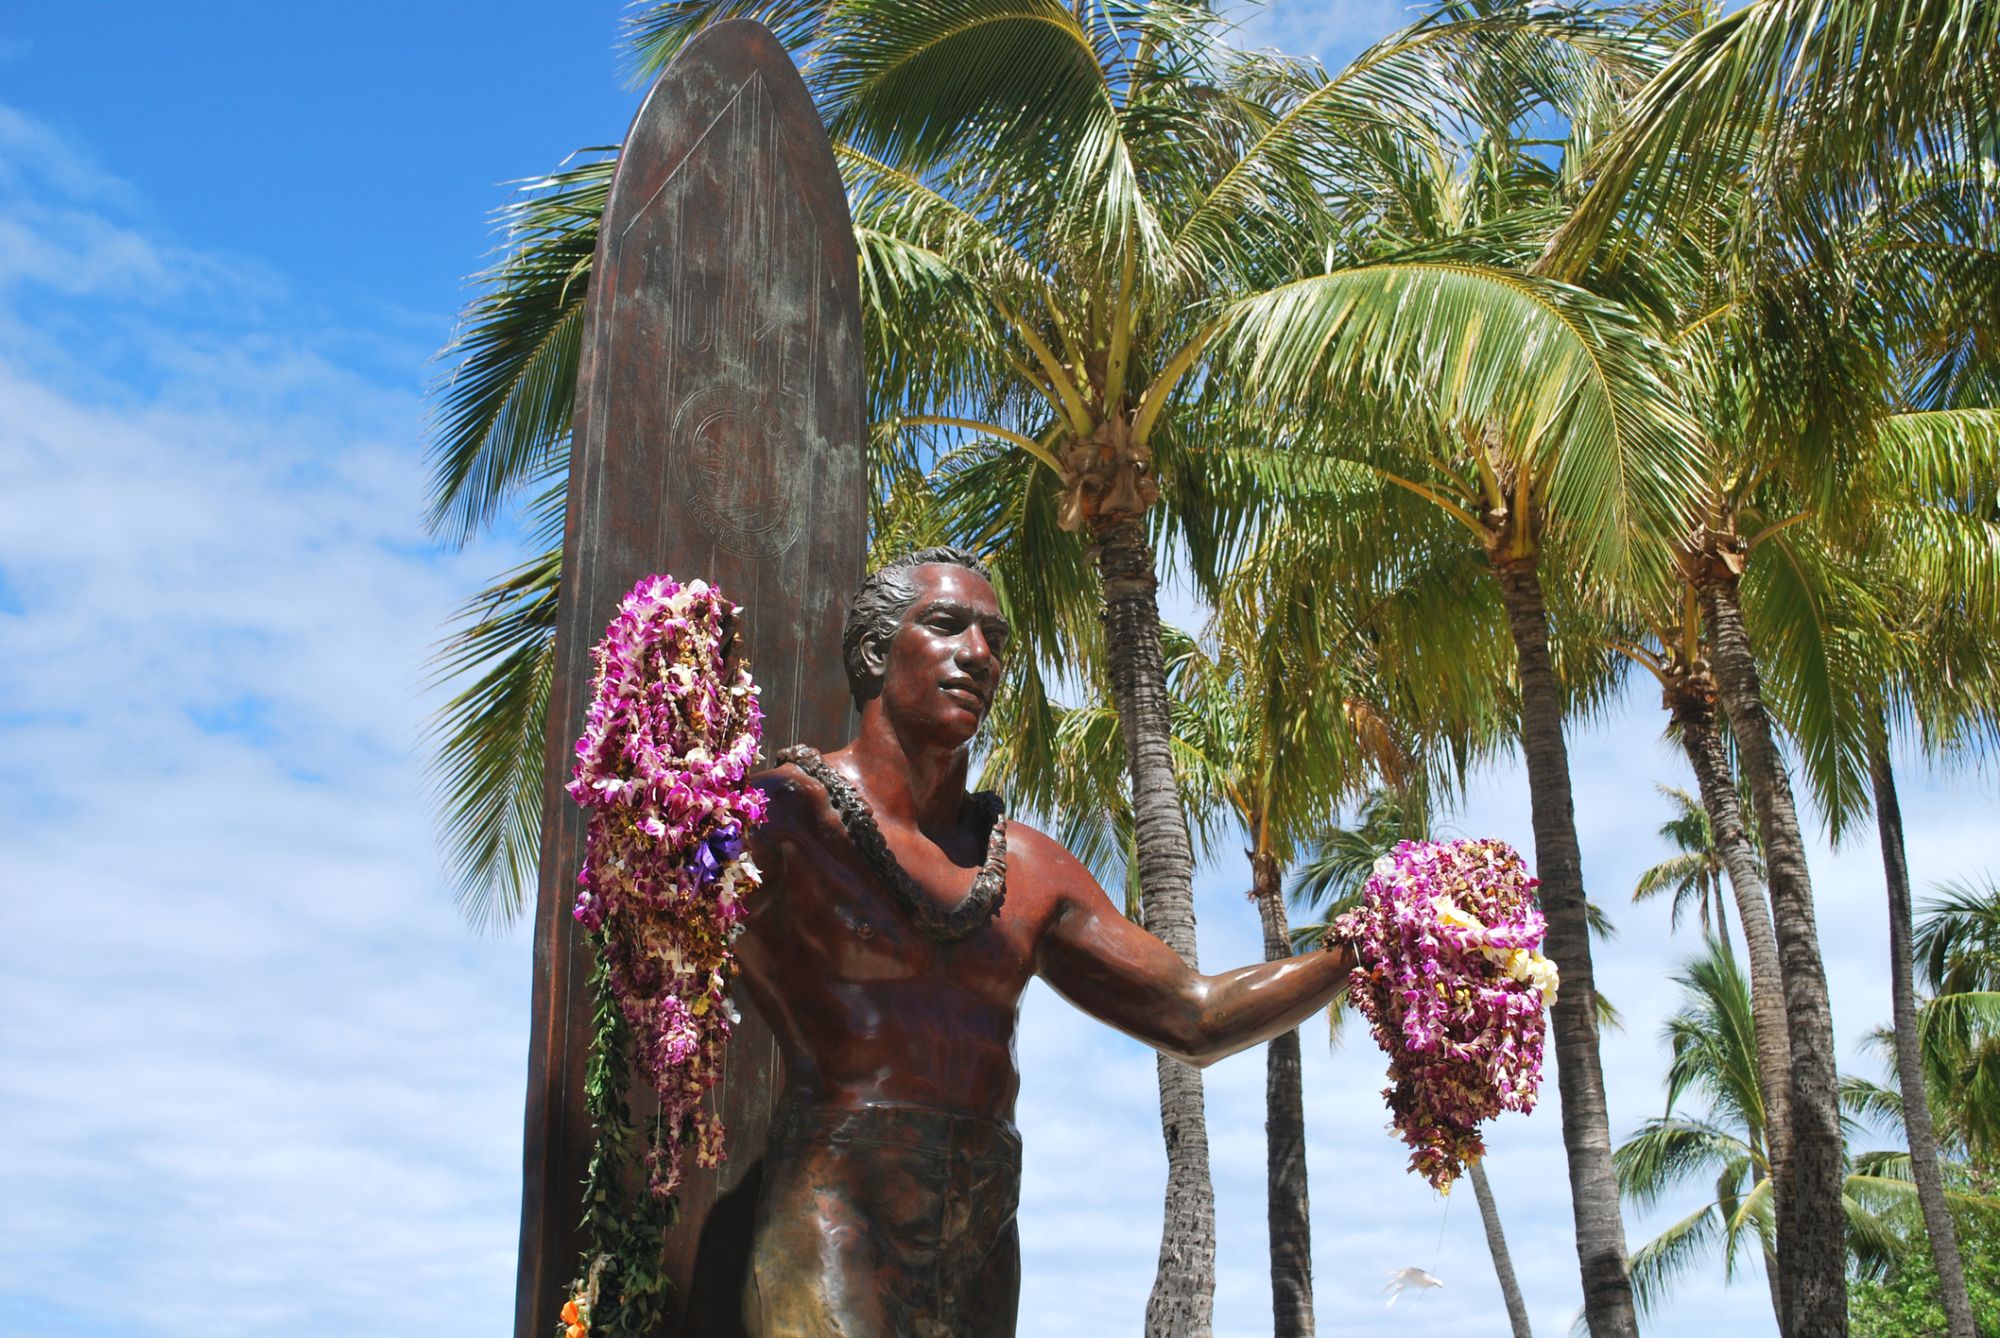 Statue of a surfer Duke Kahanamoku welcomes you to Waikiki with open arms.